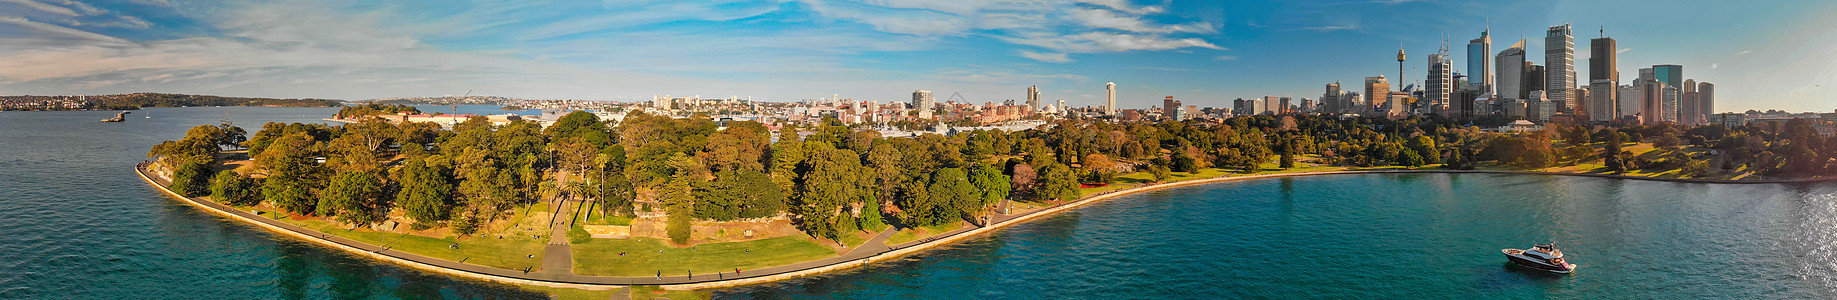 悉尼港湾的全景天文航空观察城市歌剧市中心景观建筑摩天大楼建筑学蓝色运输旅行图片